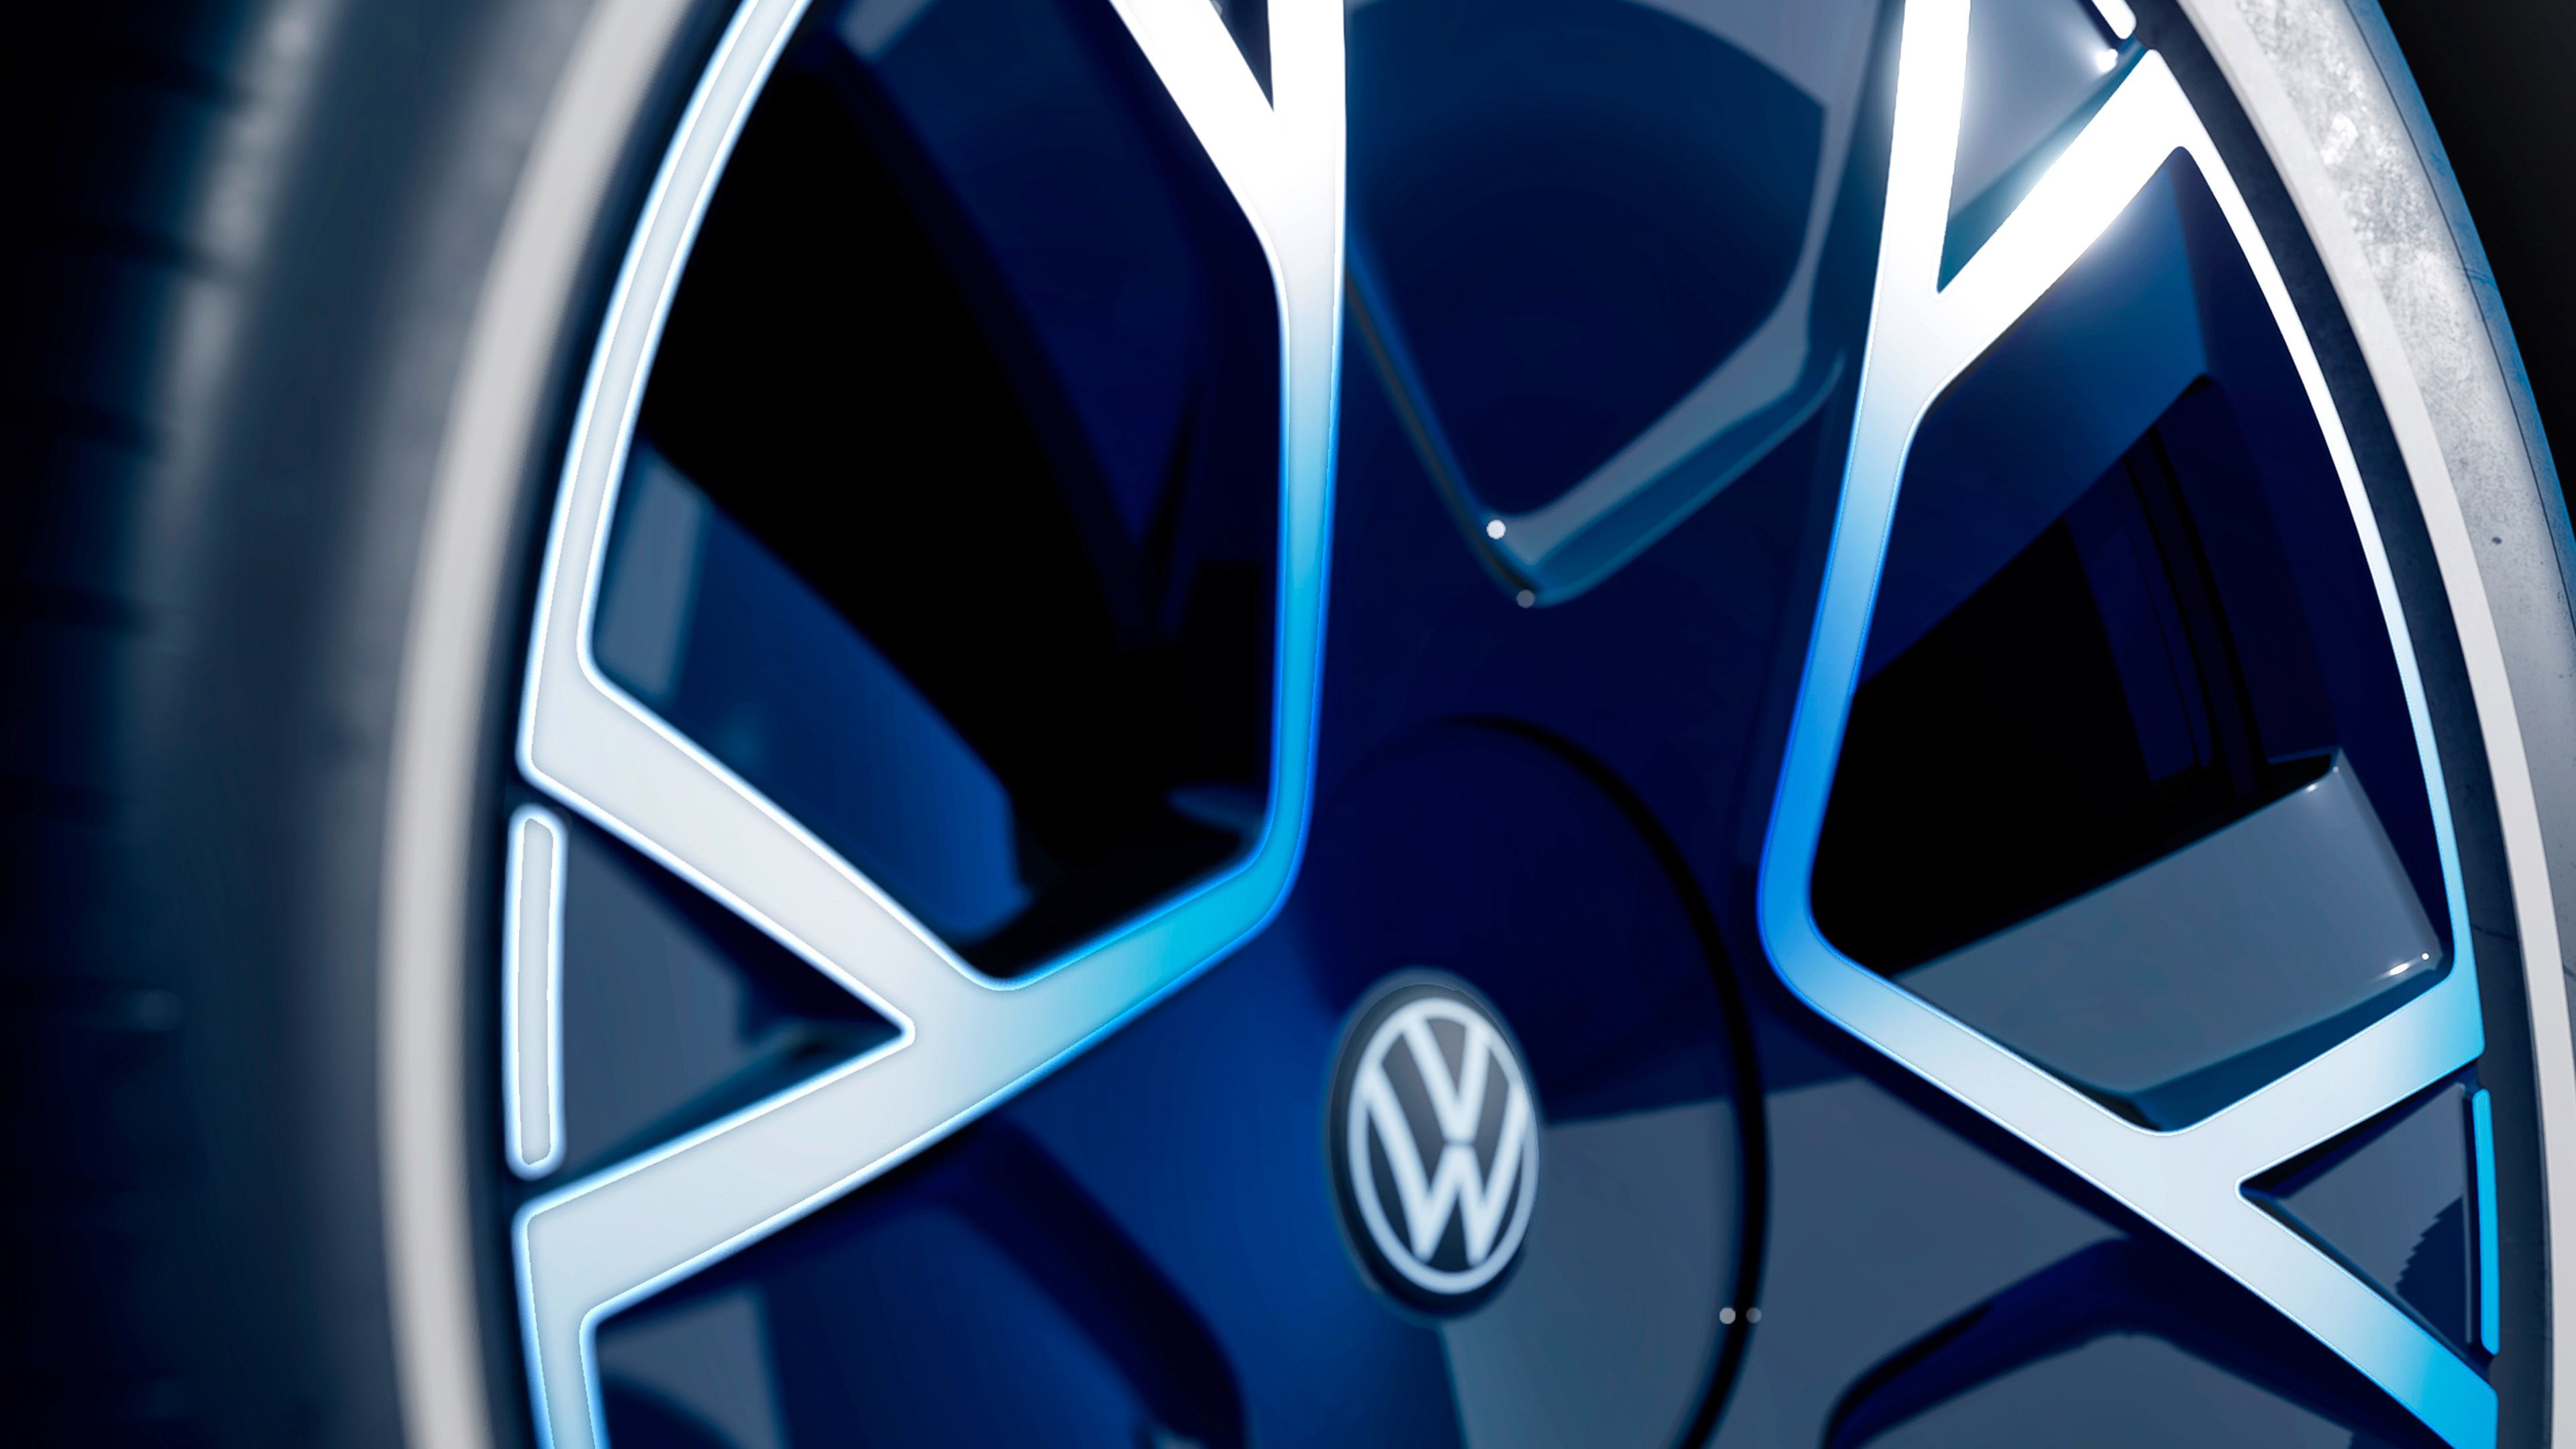 2021 Volkswagen I.D. Life Concept